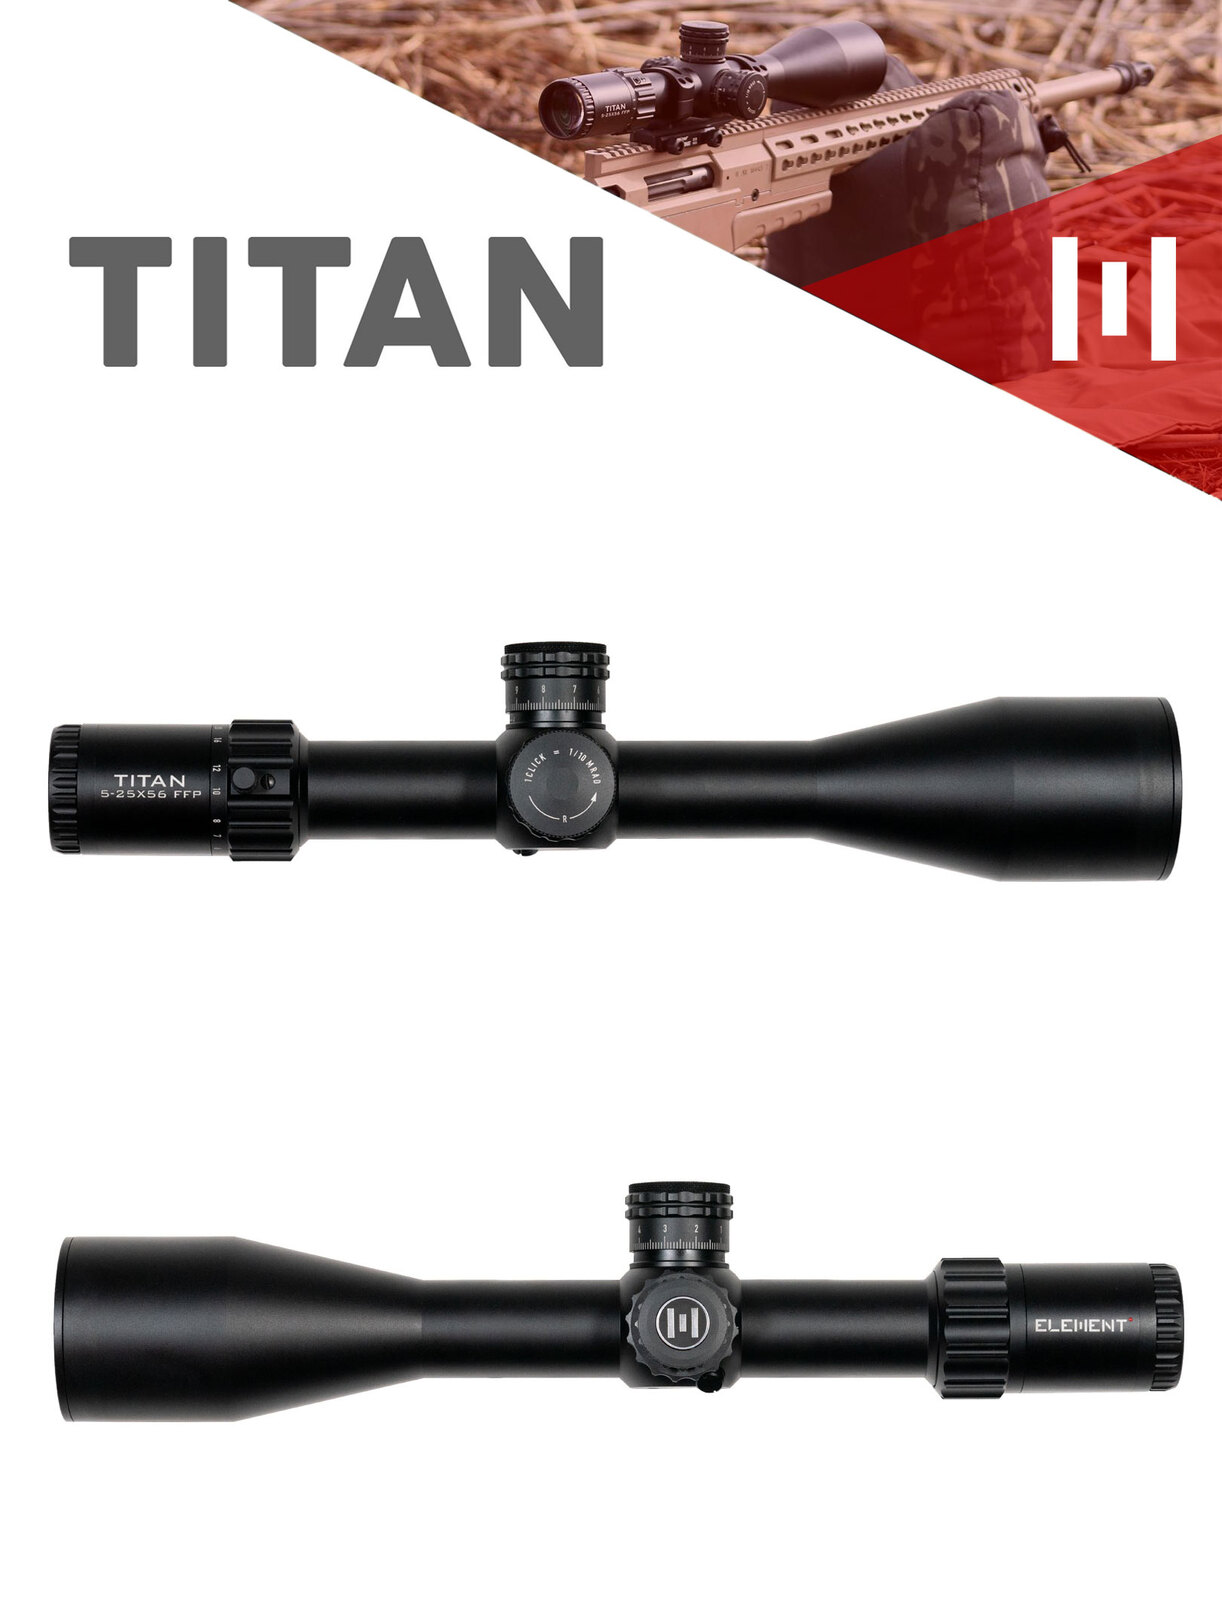 Element Optics Titan 5-25x56 FFP Review 